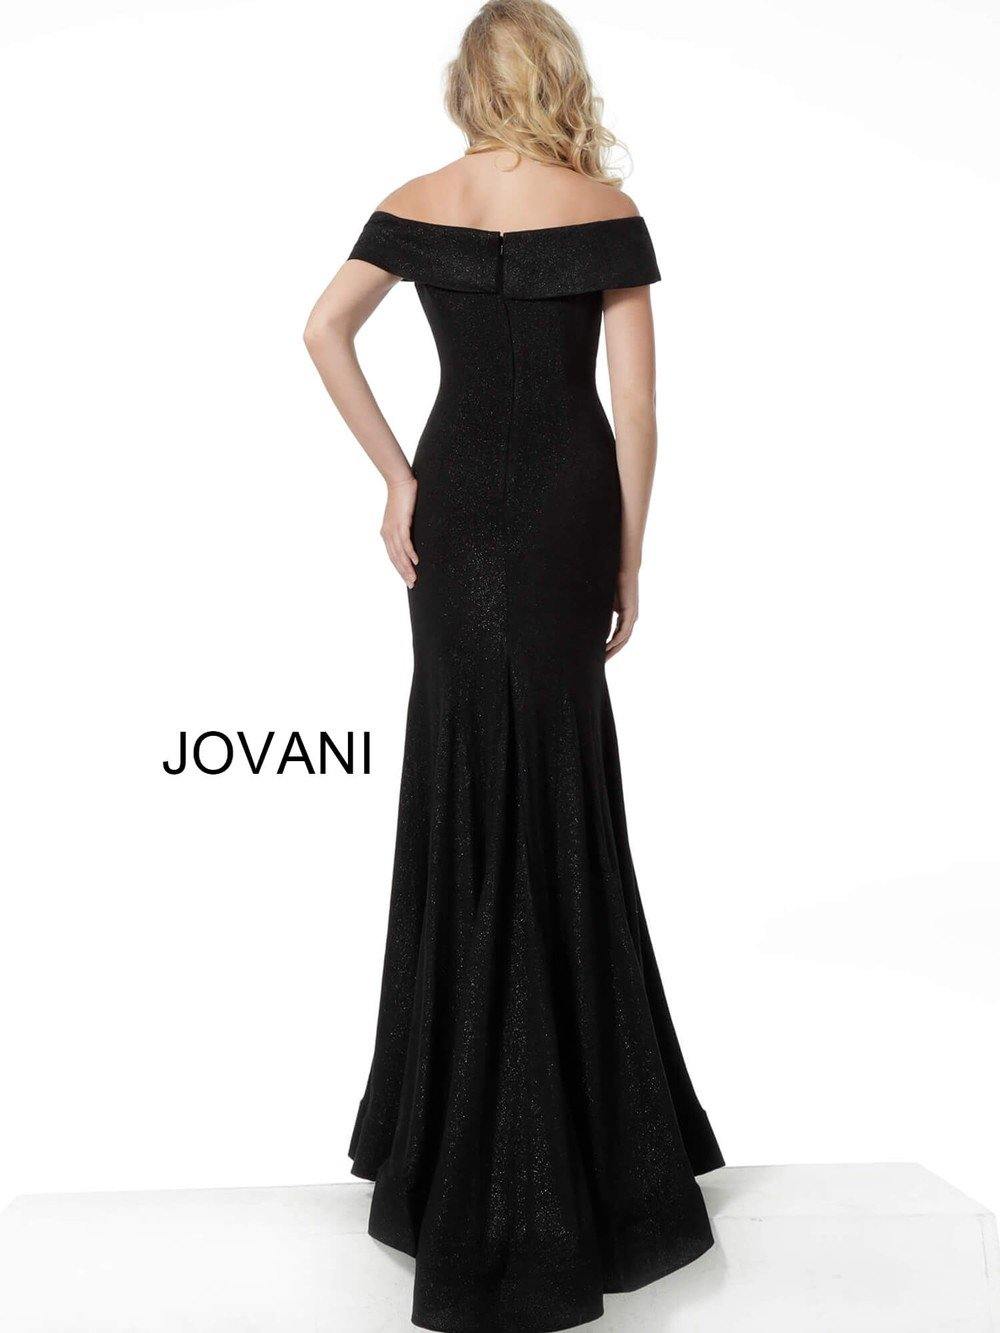 Jovani Long Dress Prom Formal JVN64533  - The Dress Outlet